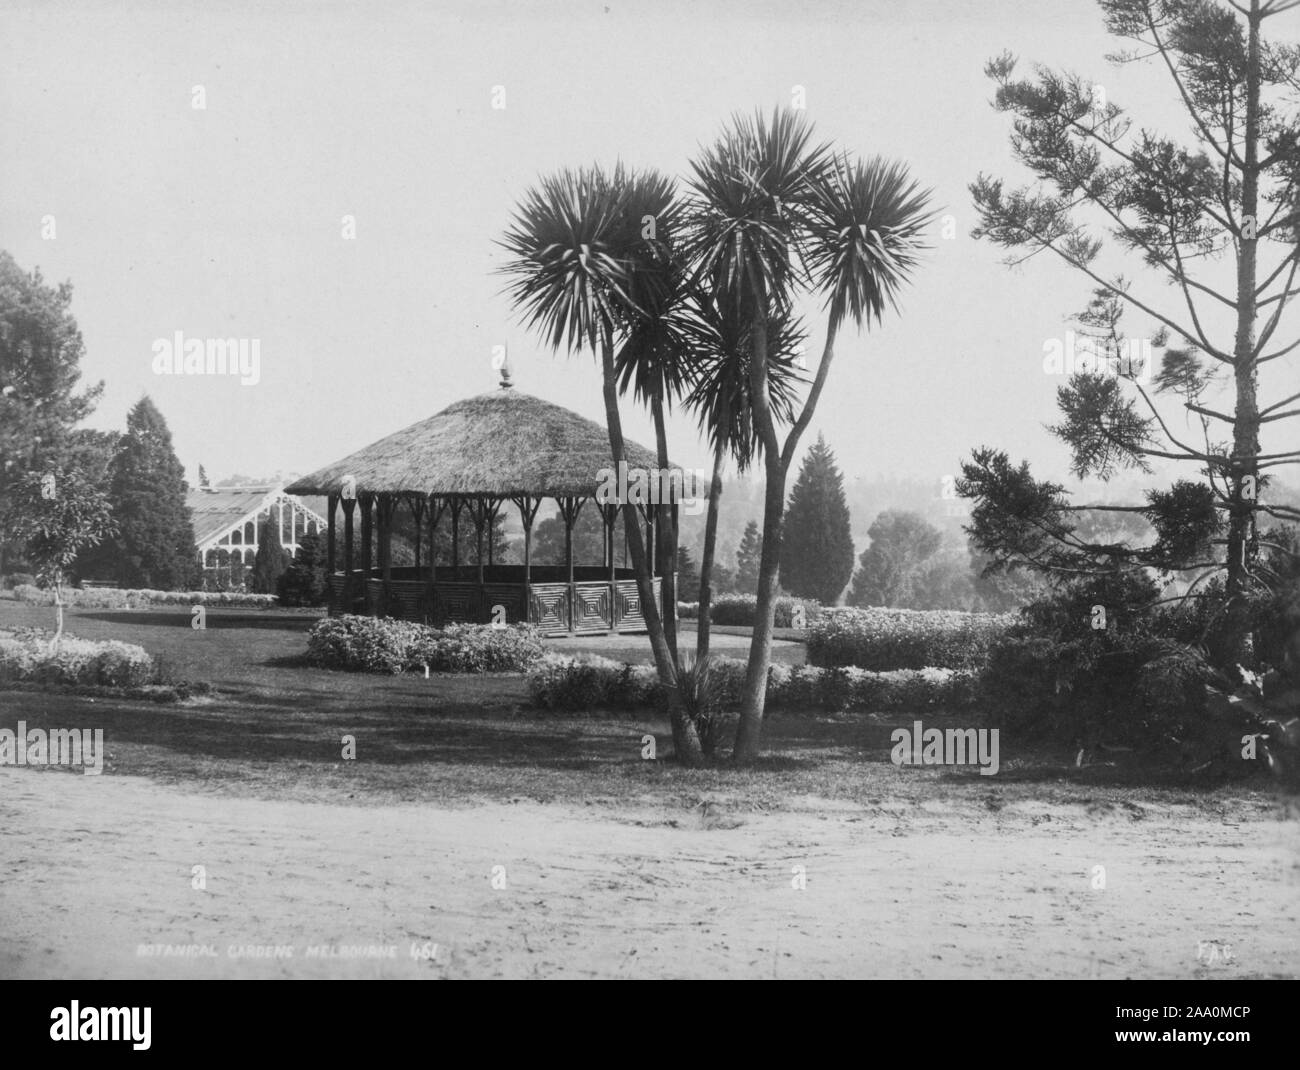 Paysage noir et blanc photographie d'un pavillon avec un toit de chaume et quelques palmiers au premier plan dans les Royal Botanic Gardens Victoria à Melbourne, en Australie, par le photographe Frank Coxhead, 1885. À partir de la Bibliothèque publique de New York. () Banque D'Images